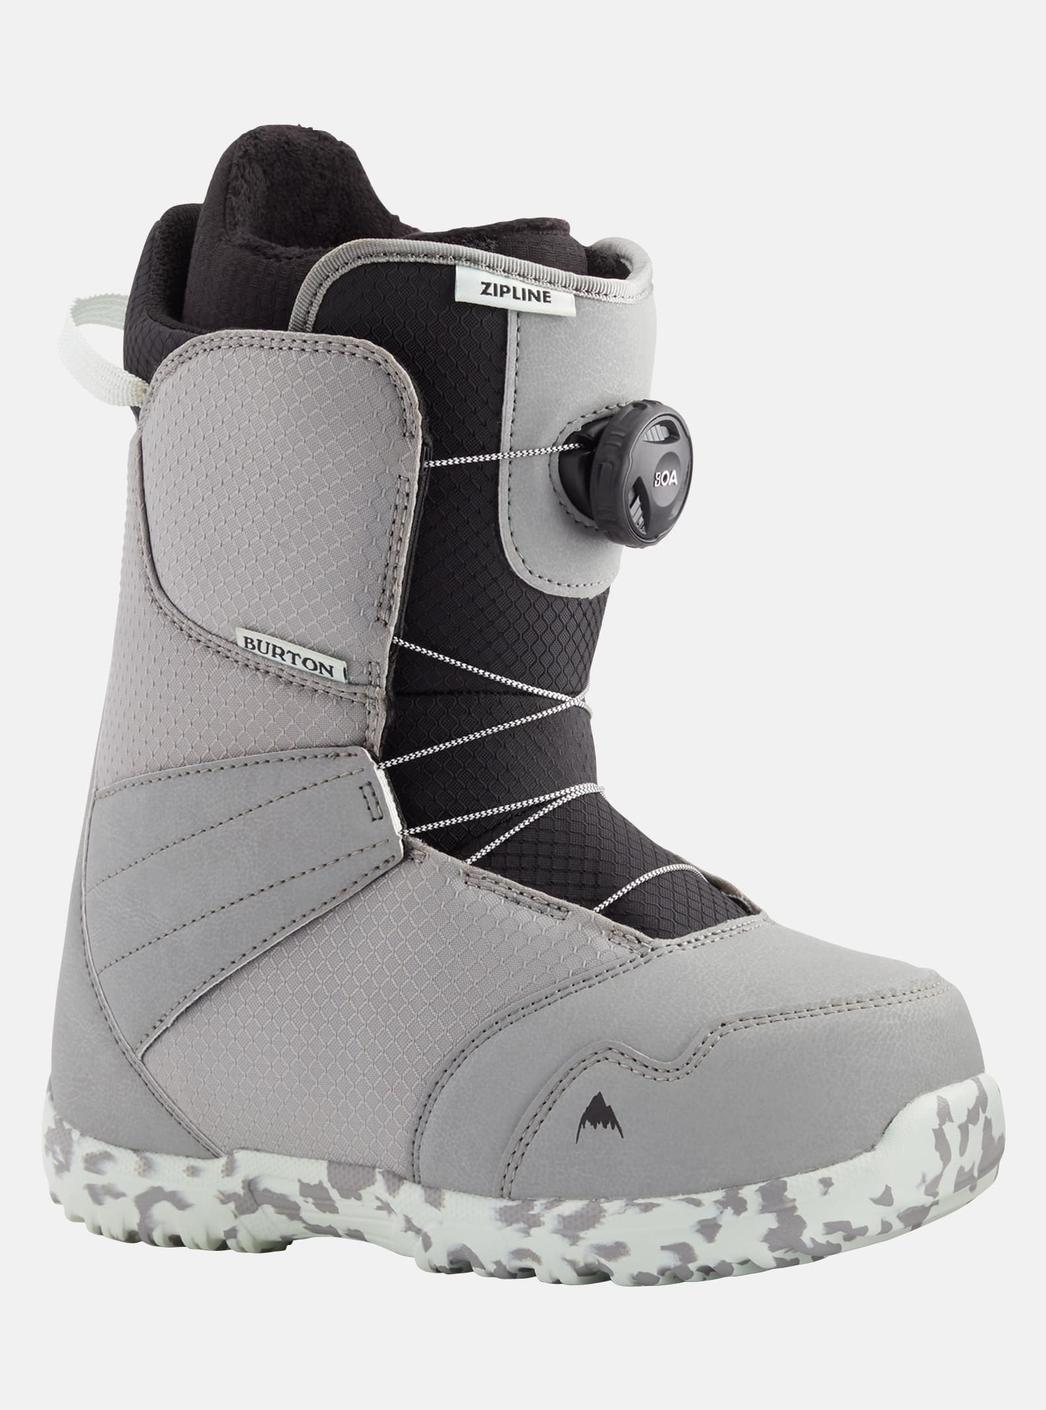 Burton - Boots de snowboard Zipline BOA® enfant offre à 140€ sur Burton of London